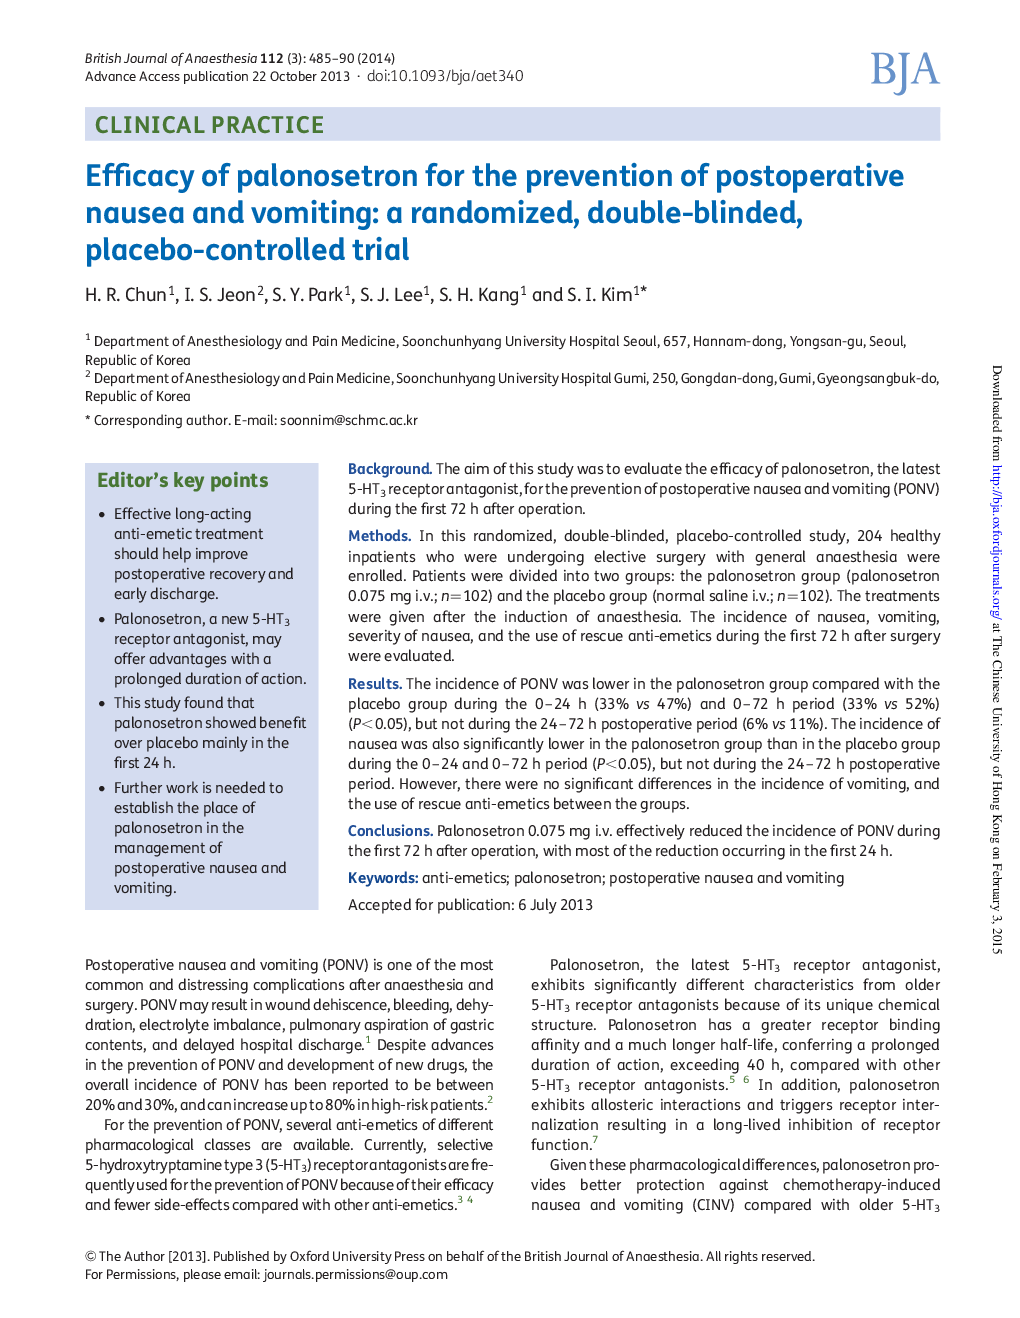 اثربخشی پالوسوئسترون برای جلوگیری از تهوع و استفراغ پس از عمل: یک کارآزمایی بالینی تصادفی، دو سو 